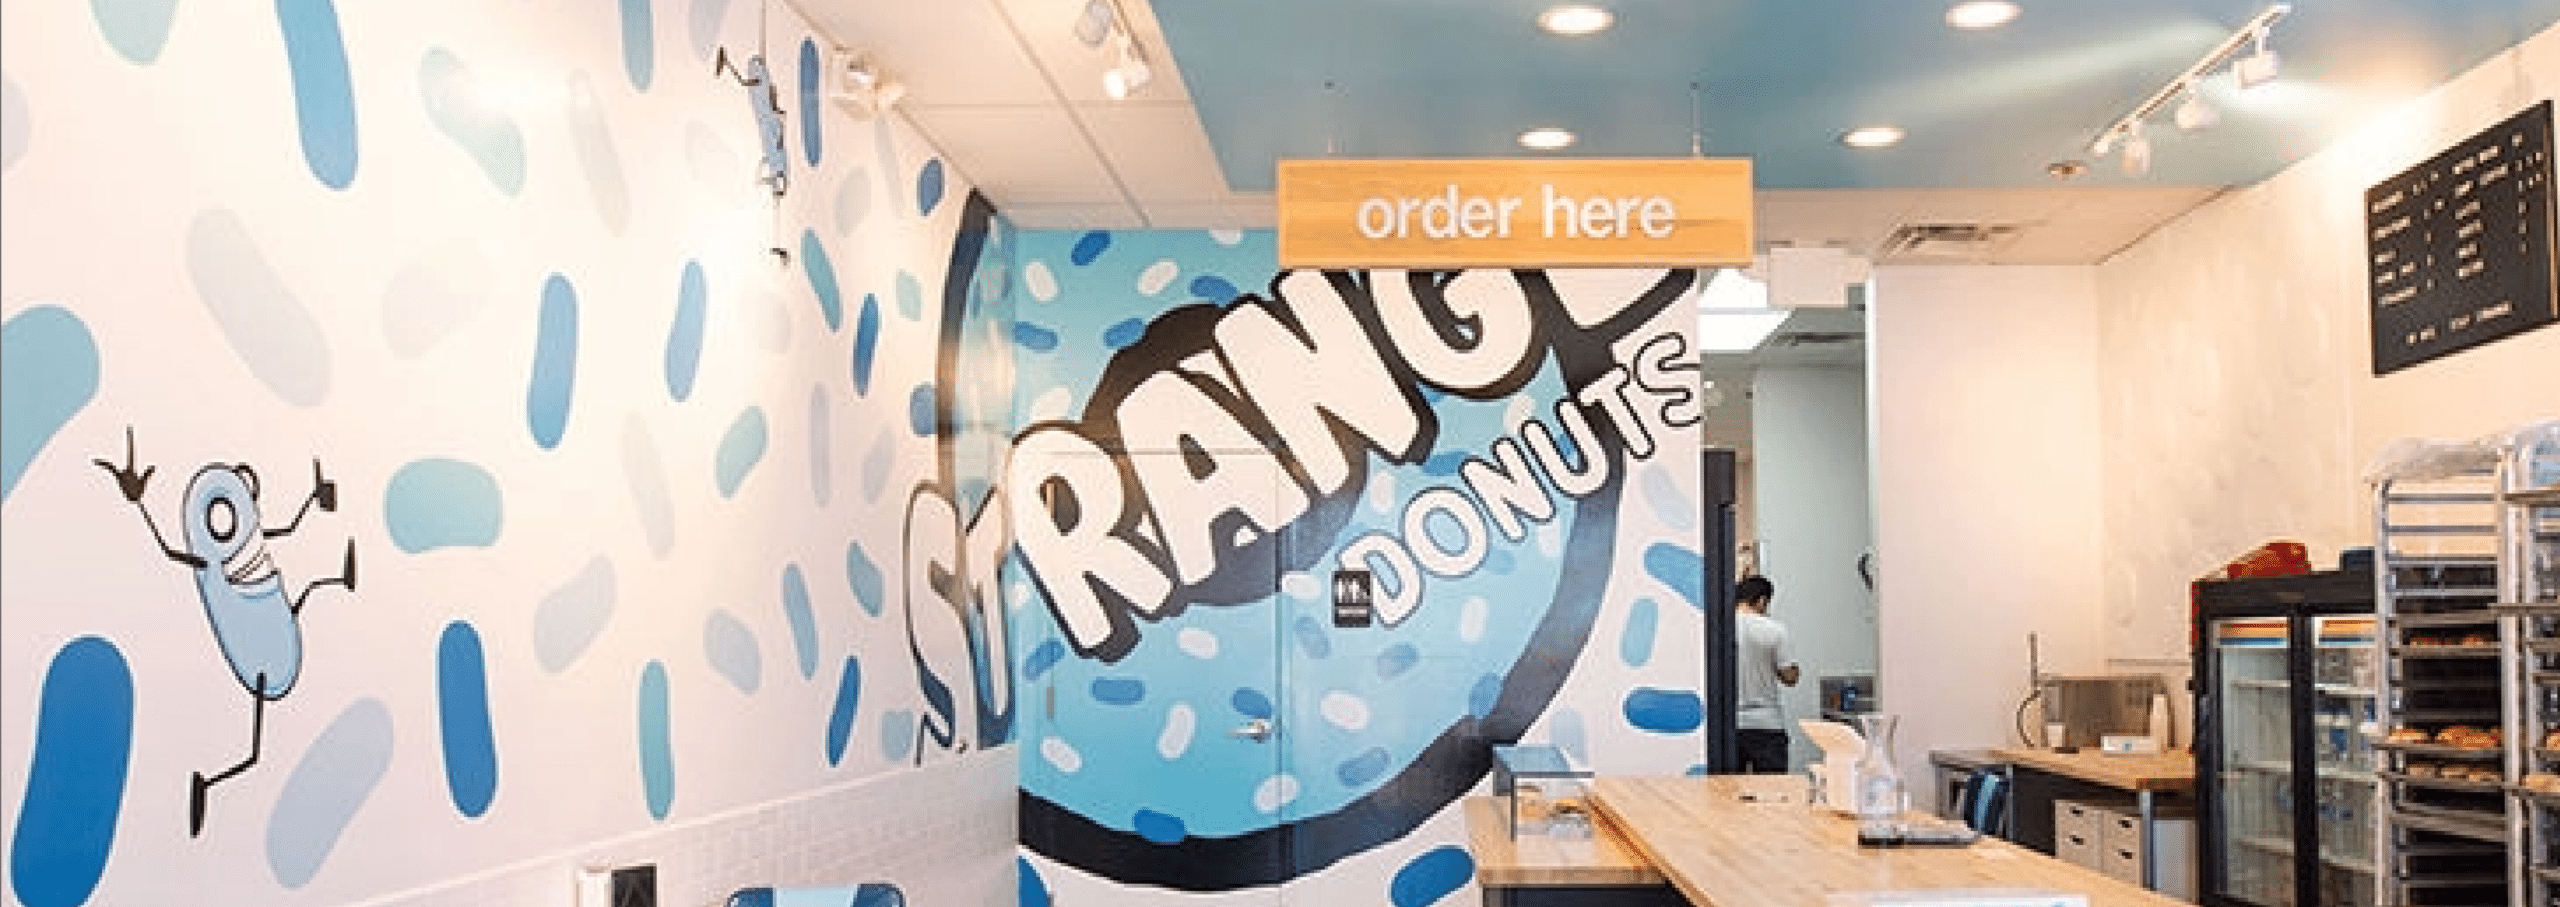 Strange Donuts | St. Louis Remodel for New Tenant | VERVE Design Studio